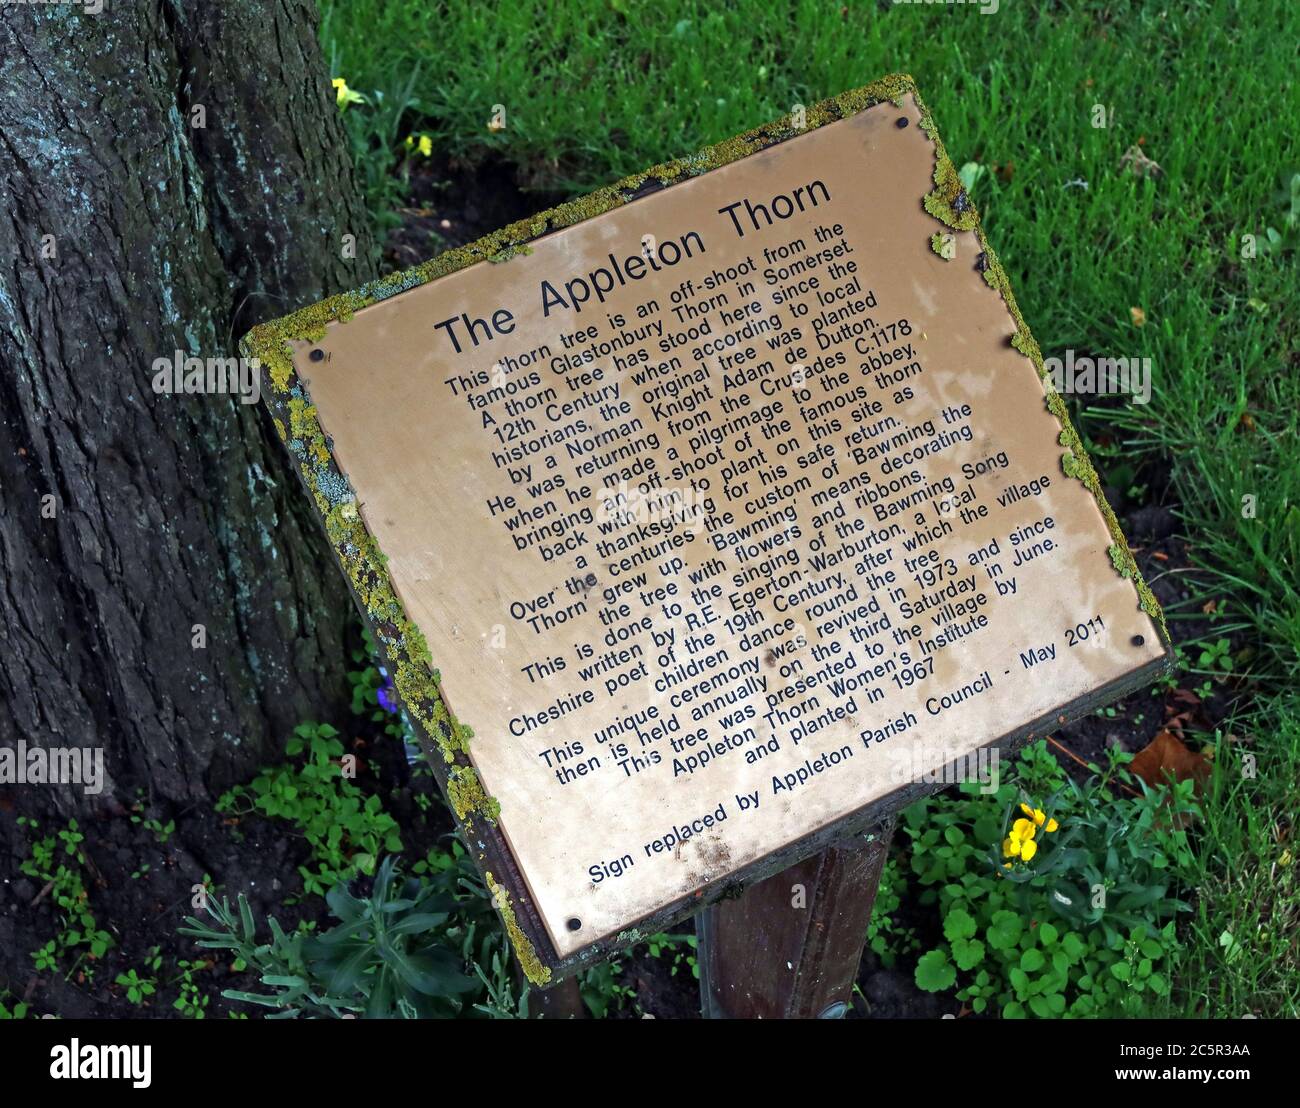 The Appleton thorn, histoire de l'auvent du Thorn, Appleton Thorn, Warrington, Cheshire, Angleterre, Royaume-Uni Banque D'Images